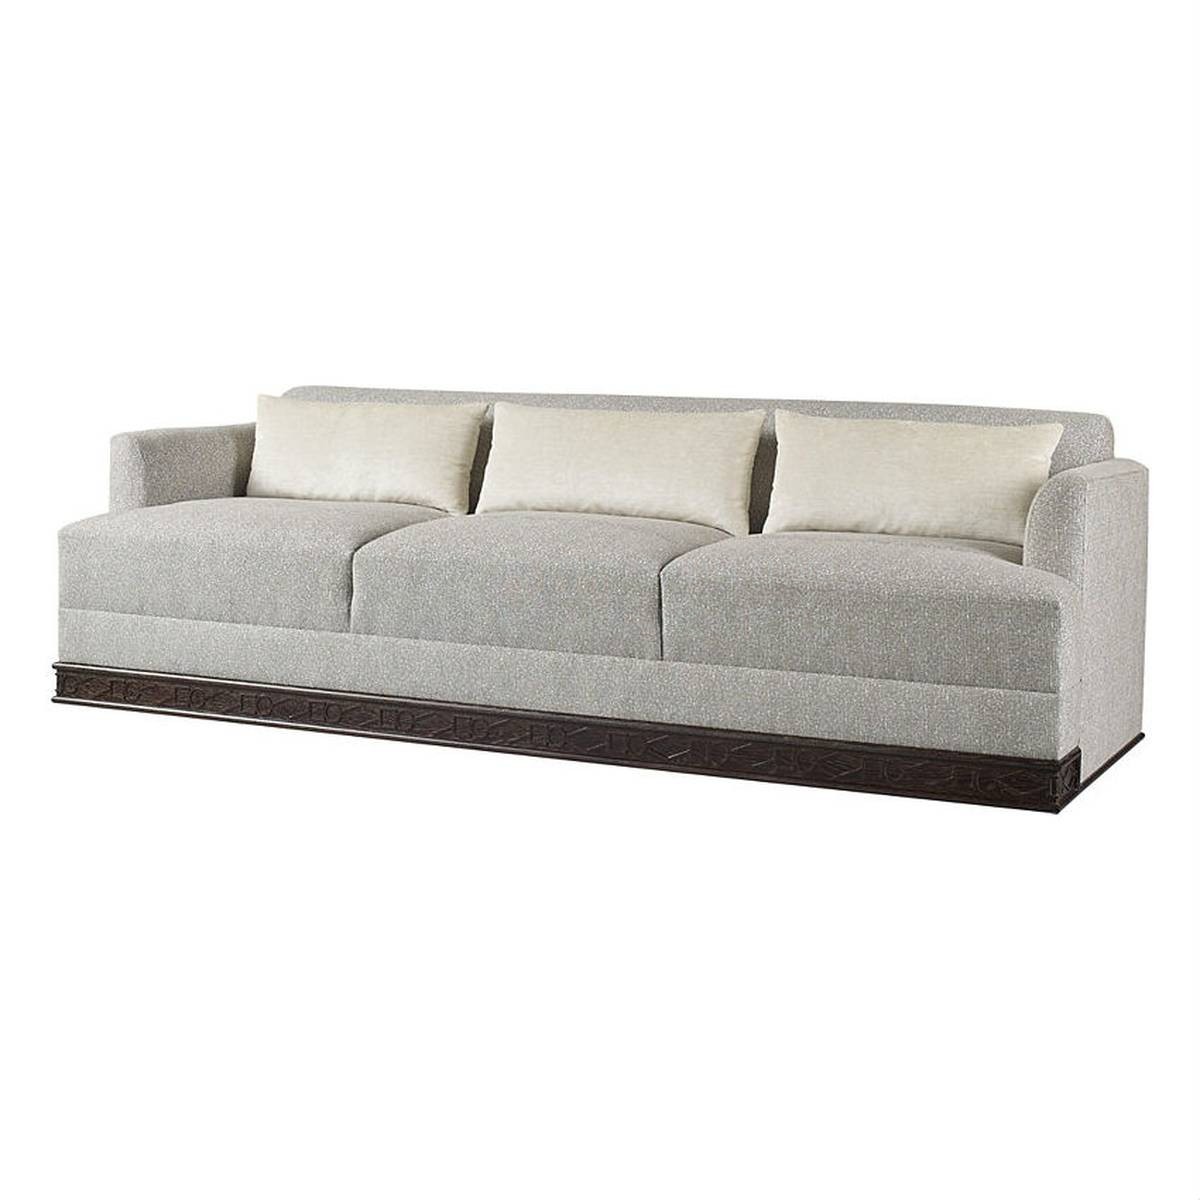 Прямой диван Channel sofa из США фабрики BAKER